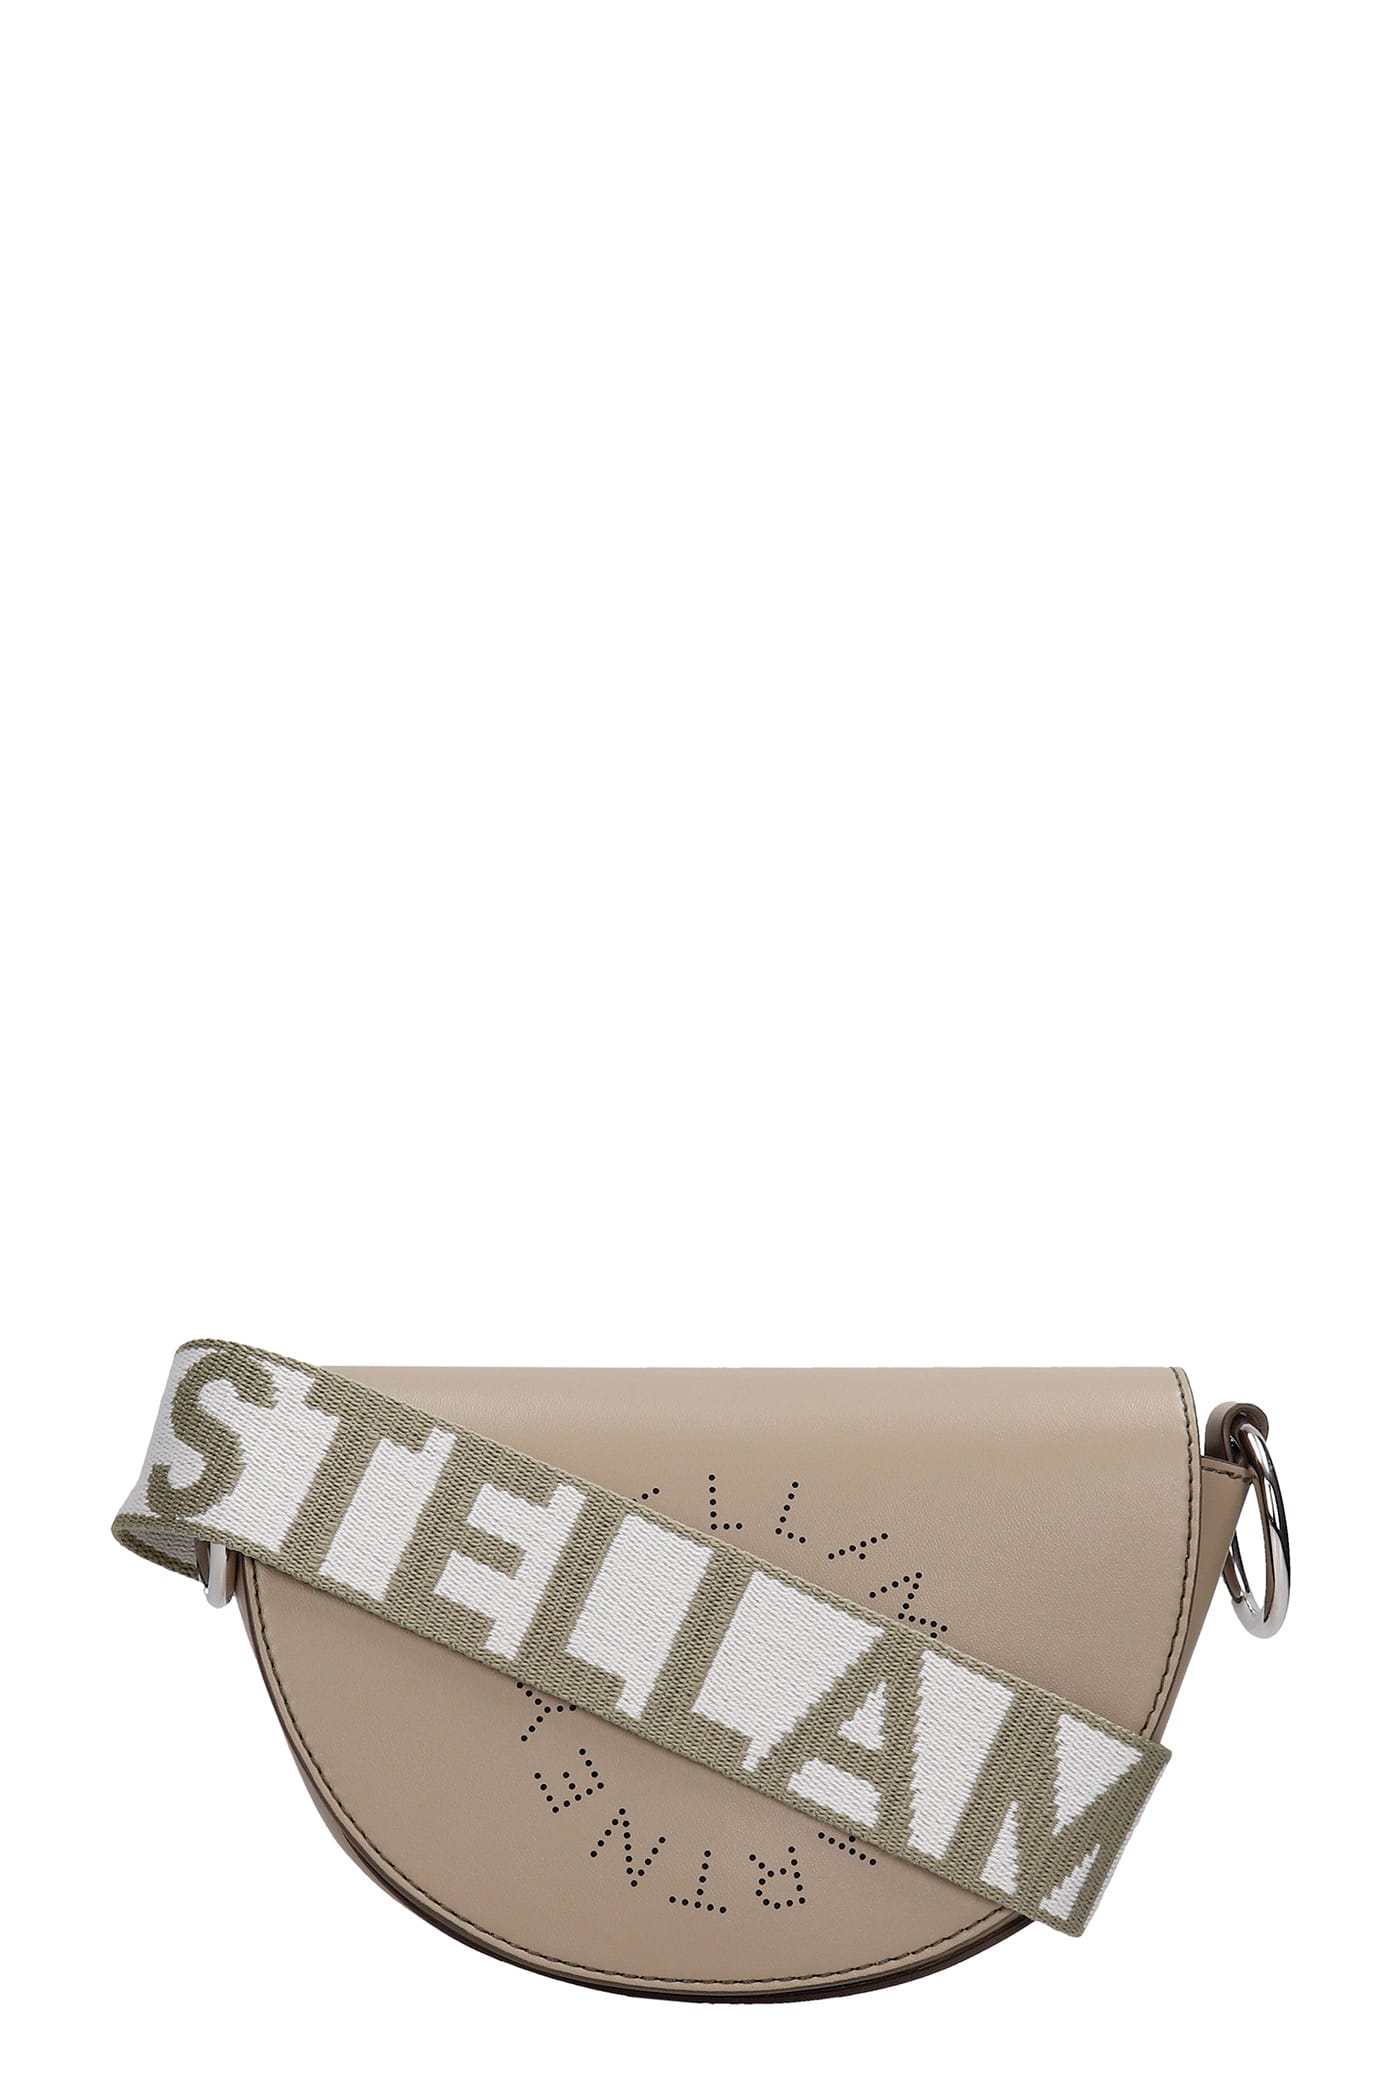 Stella McCartney Shoulder Bag In Taupe Polyester